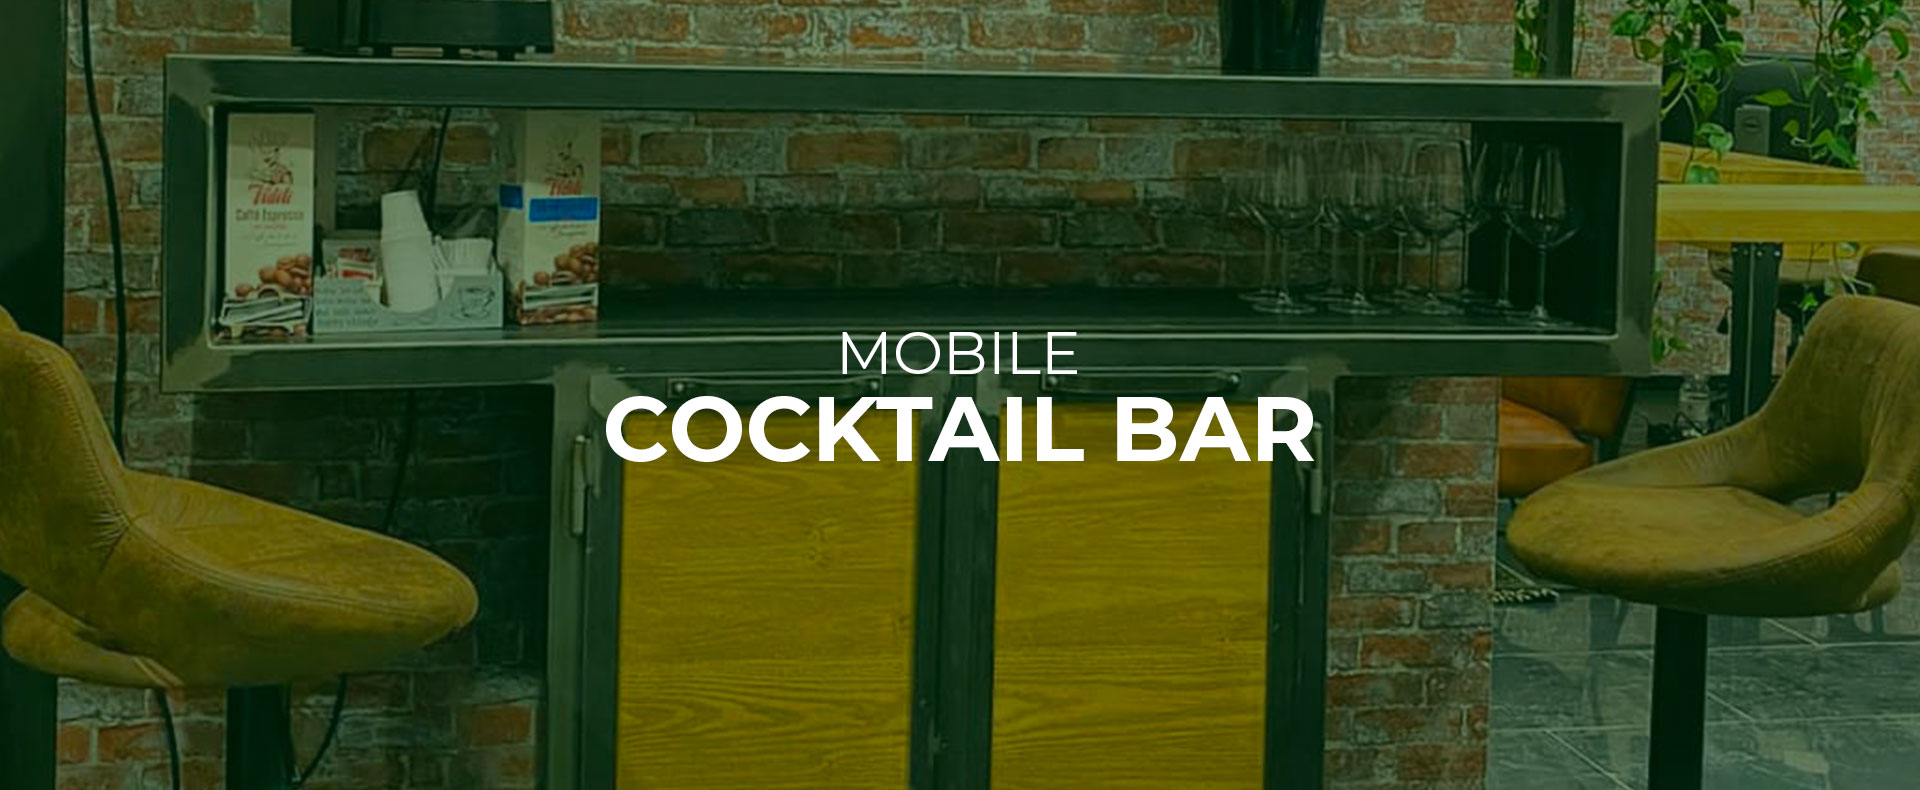 mobile-bar-cocktail-bar-in-legno-e-ferro-roma-provincia-latina-velletri-lariano-orsolini-design